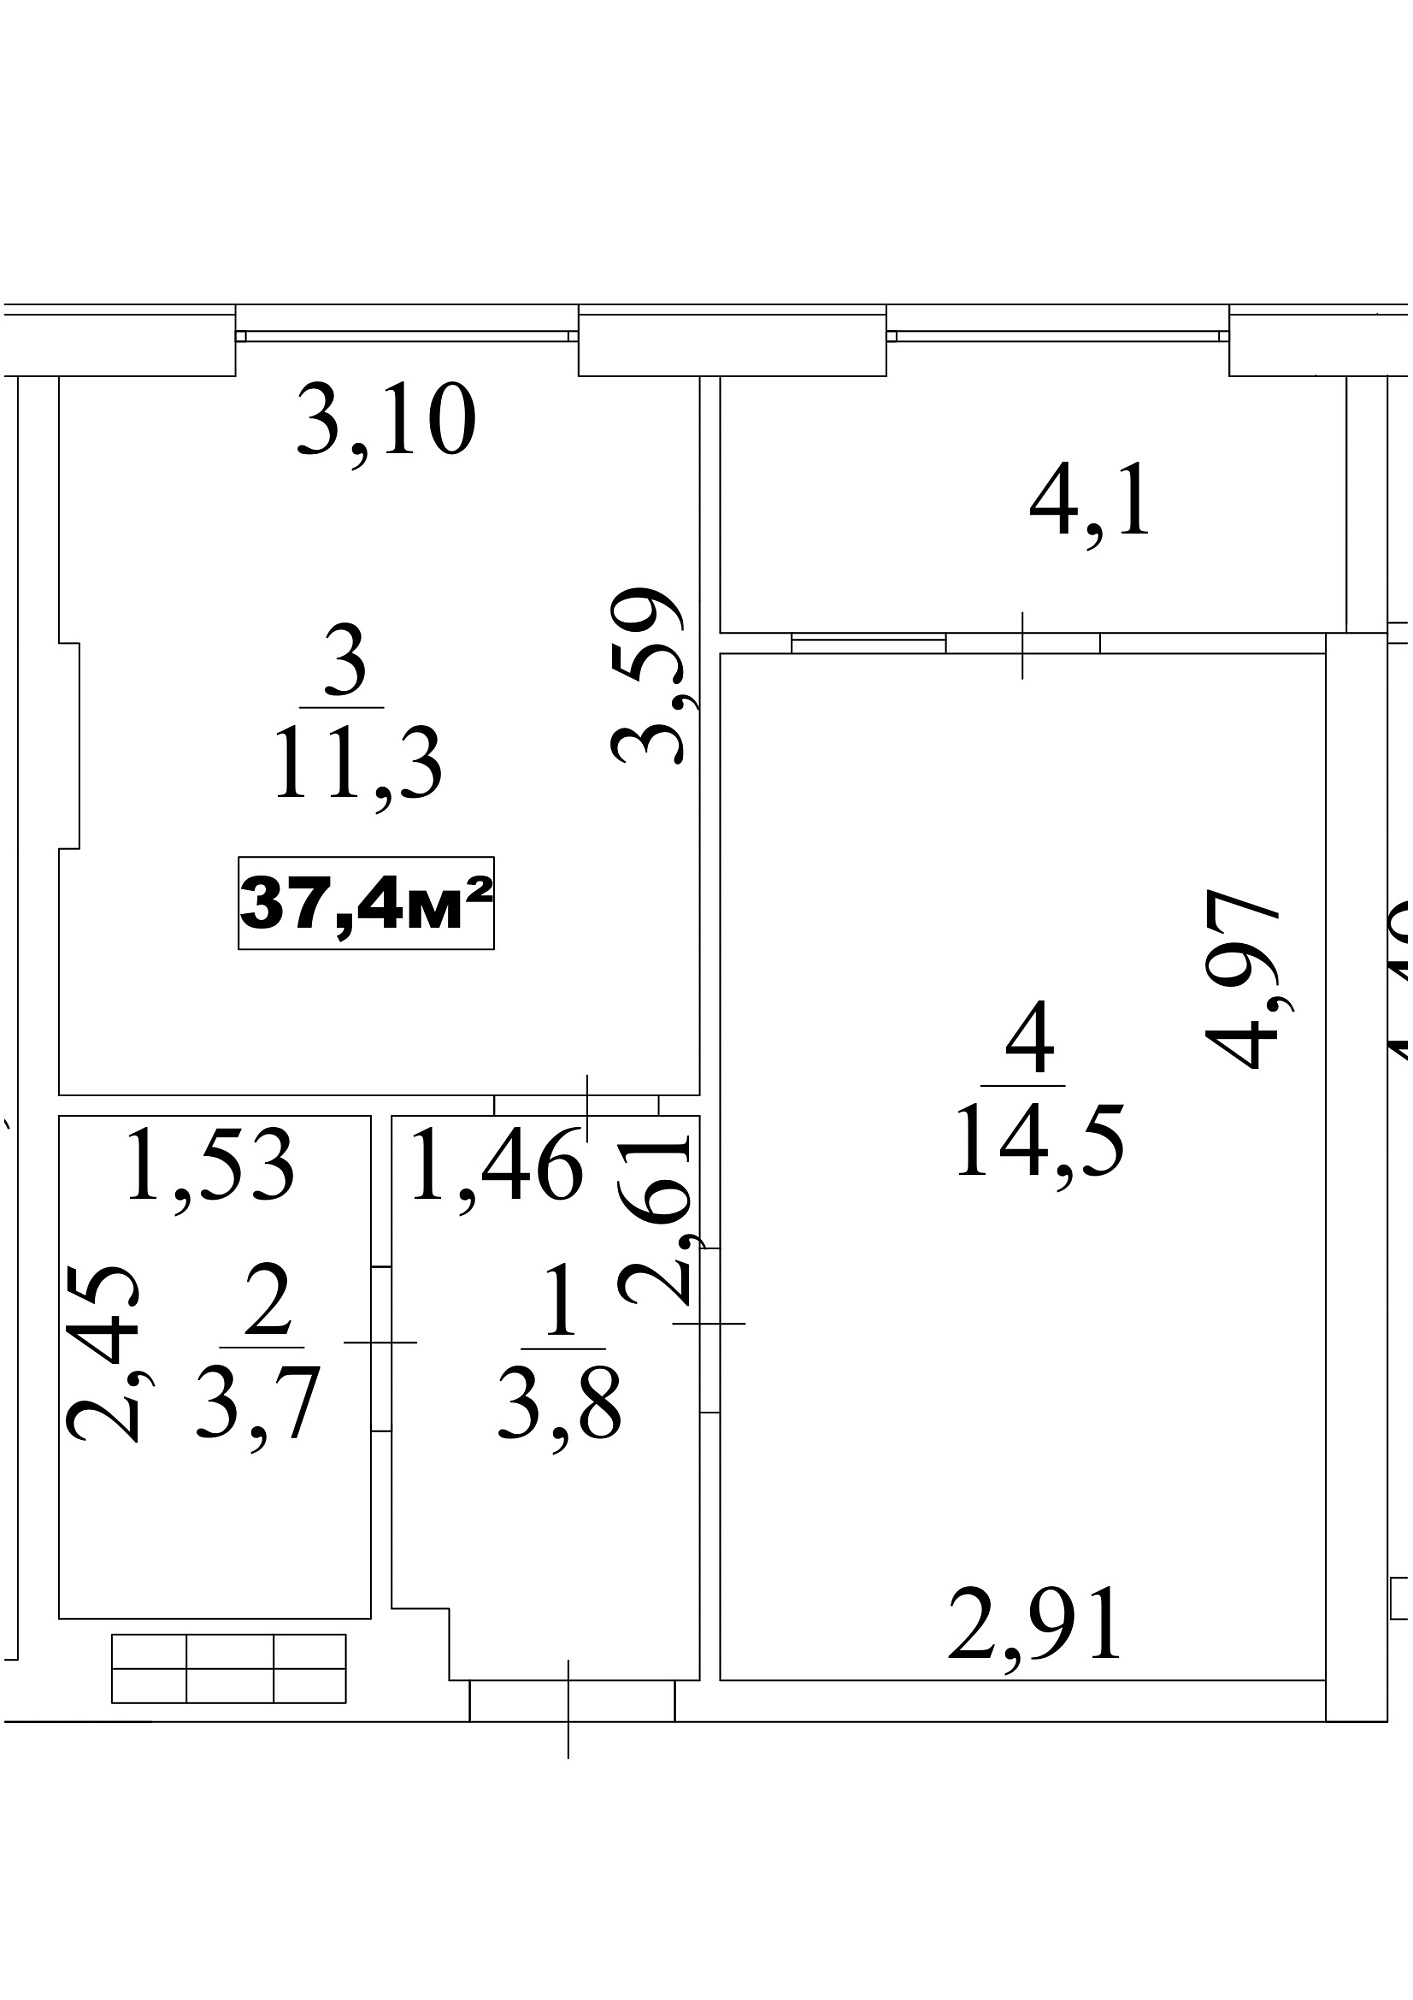 Планировка 1-к квартира площей 37.4м2, AB-10-10/0088а.